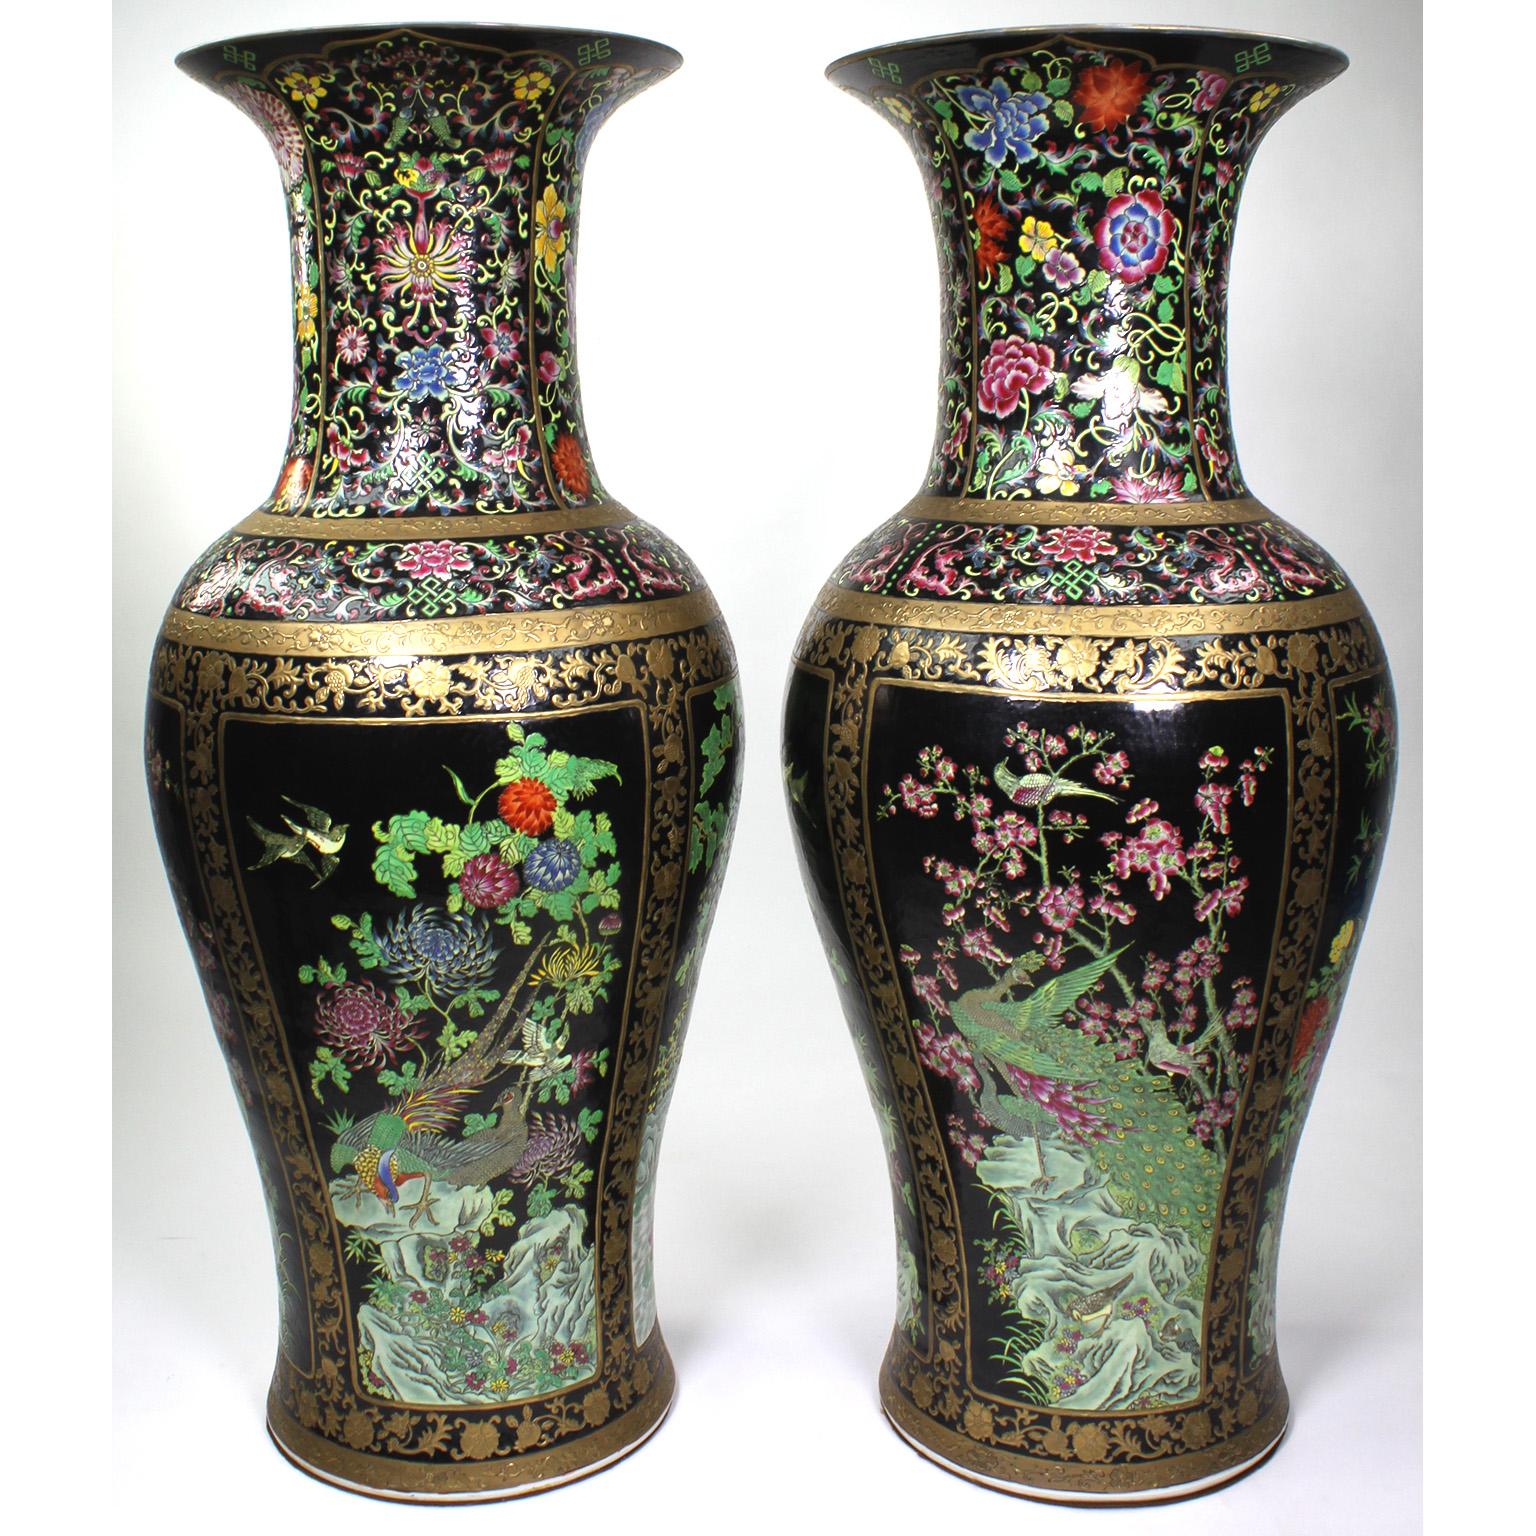 Ein Paar große figurale Vasen aus chinesischem Exportporzellan. Die eiförmigen Porzellankörper sind mit farbenfrohen Blumen, tropischen Vögeln, Bäumen, Lilien und einem Teich verziert, mit einem paketvergoldeten Rand und schwarzem Hintergrund.